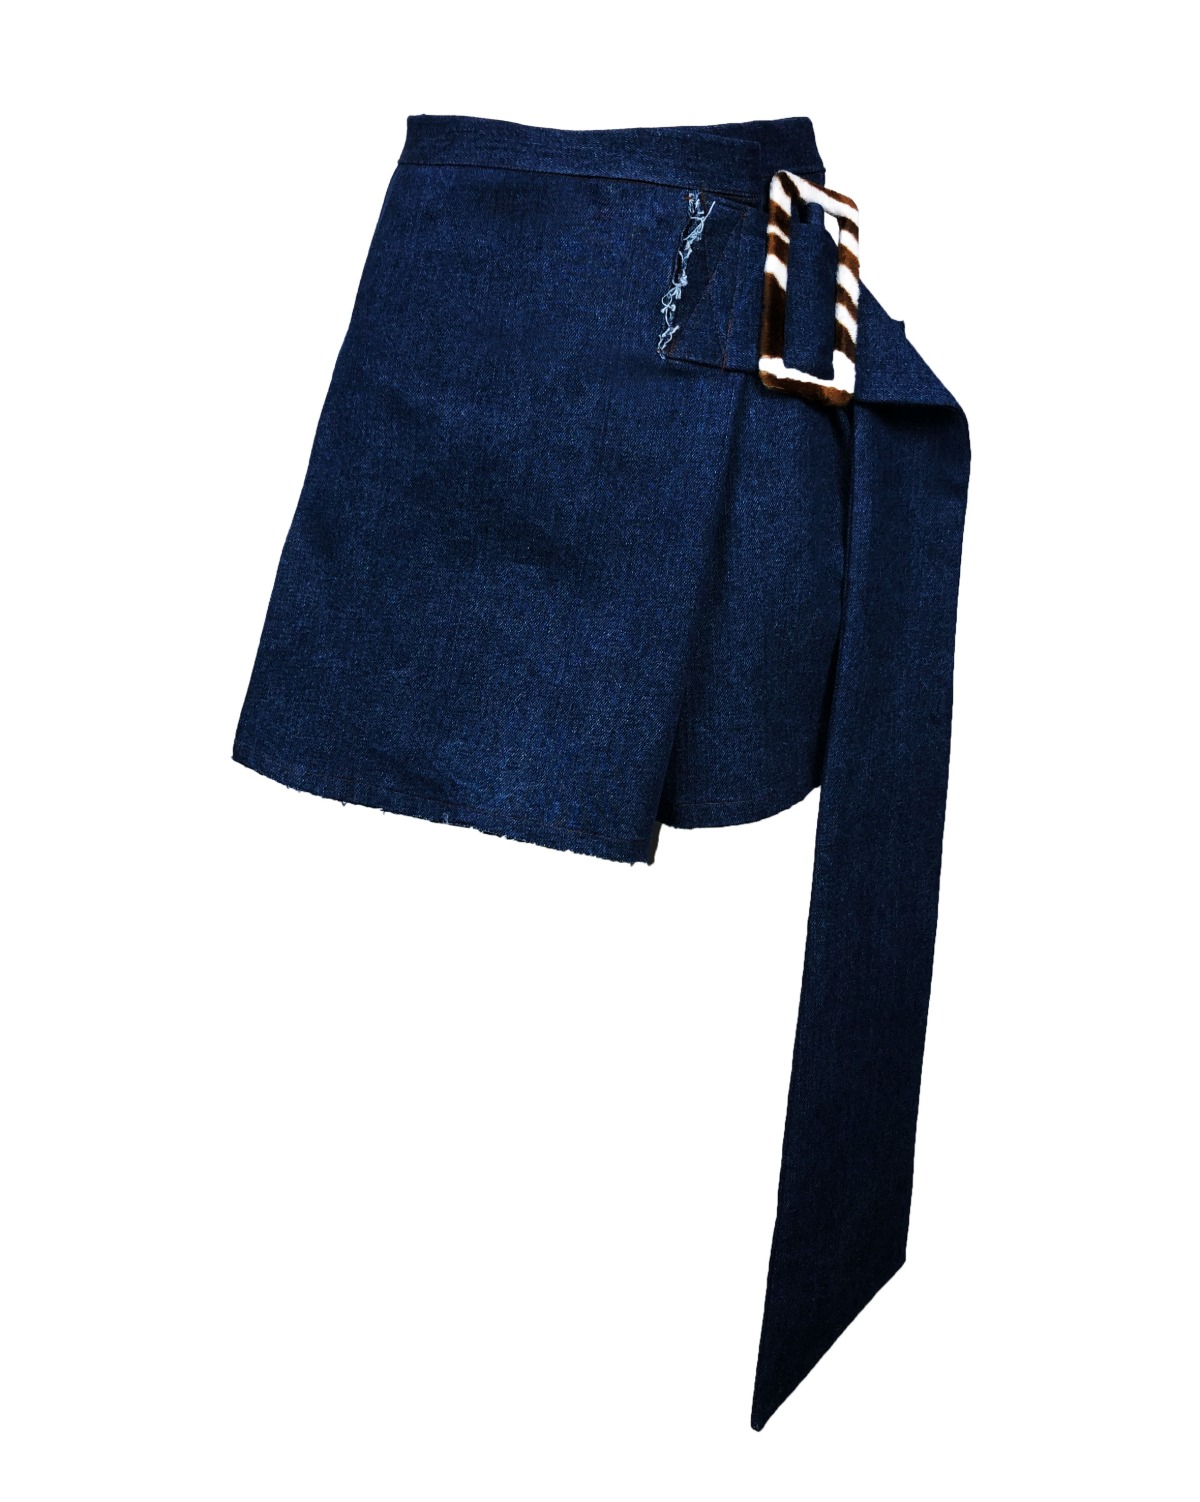 big belt pleats mini skirt [blue denim] 148.000₩→60,000₩